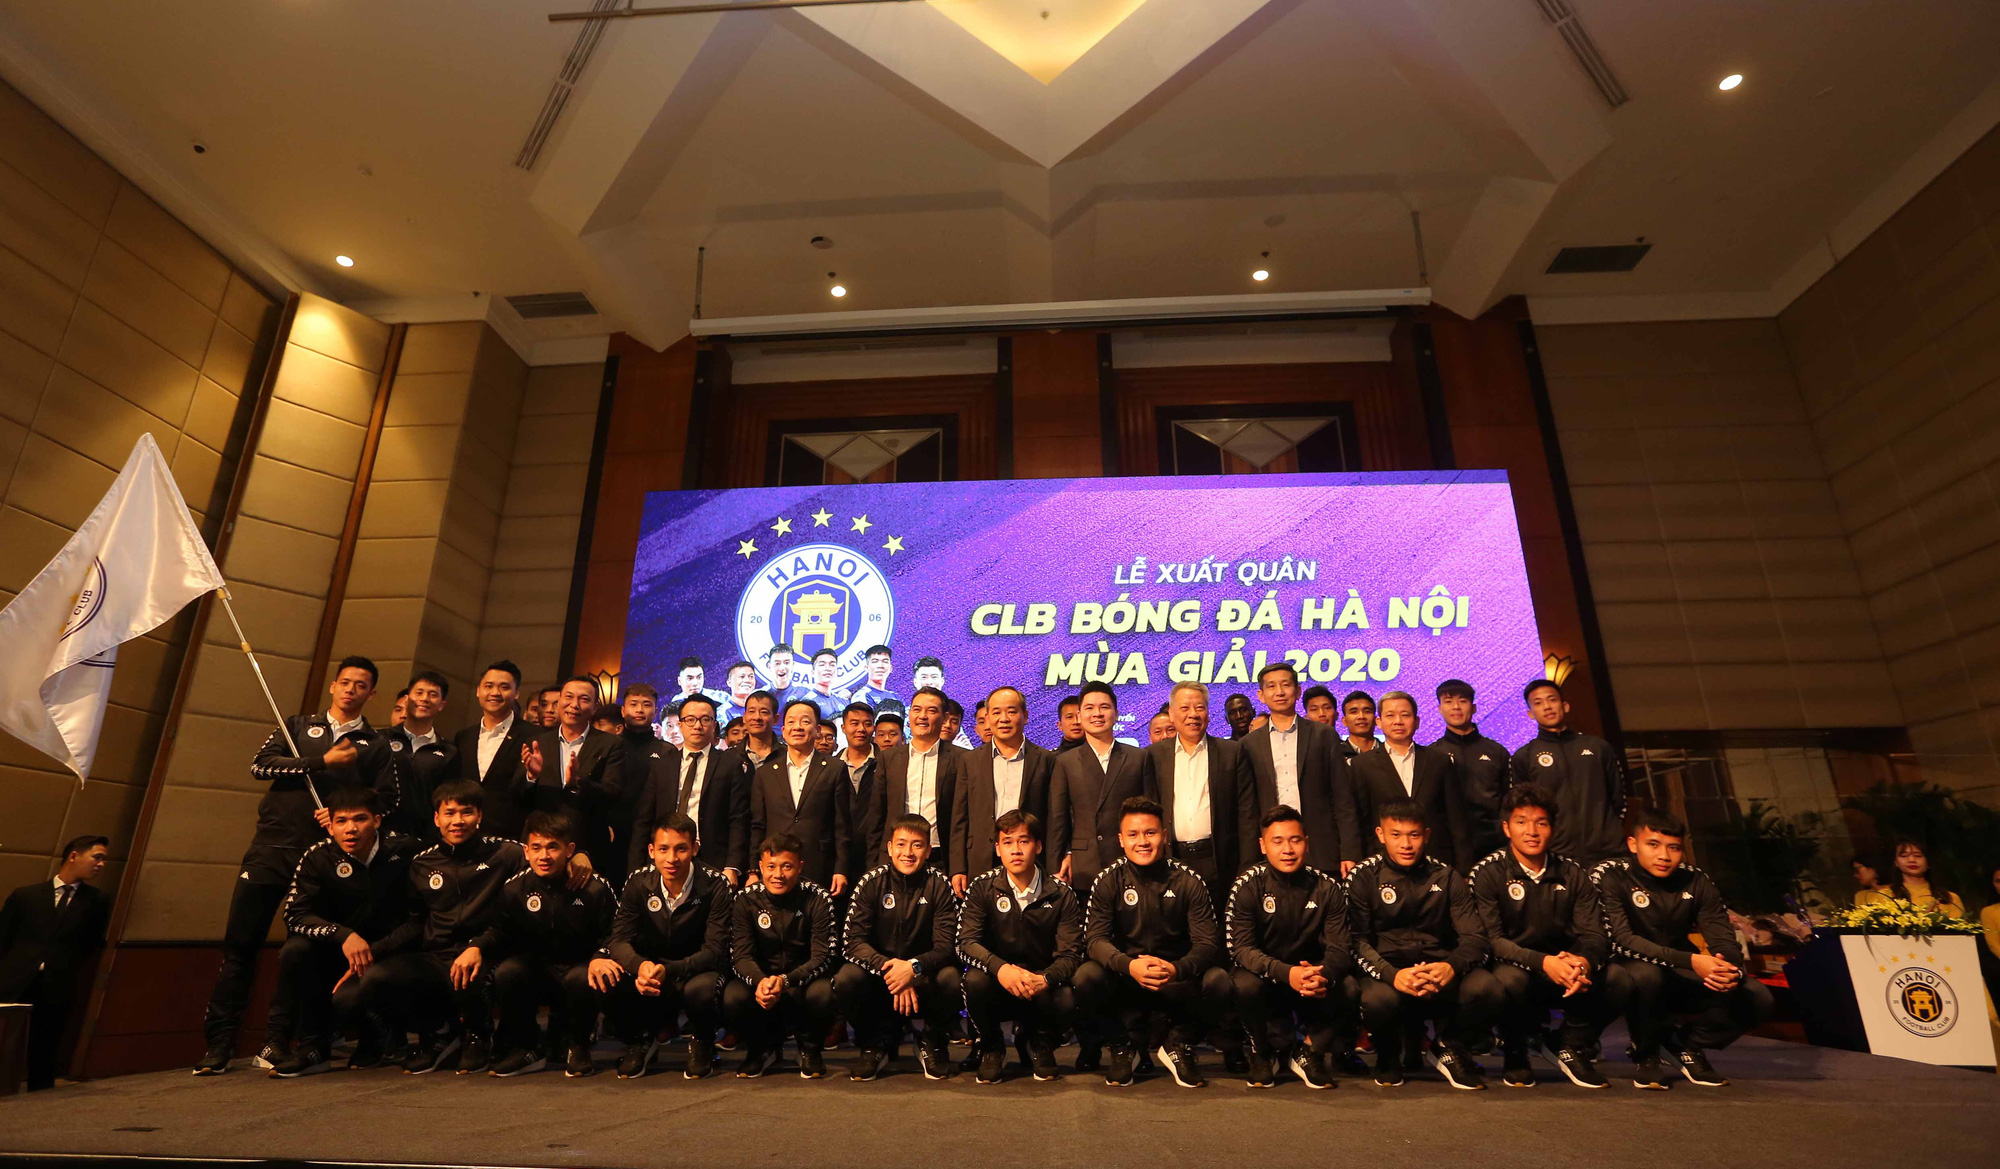 Thứ trưởng Lê Khánh Hải dự lễ xuất quân CLB Hà Nội mùa giải 2020 - Ảnh 2.